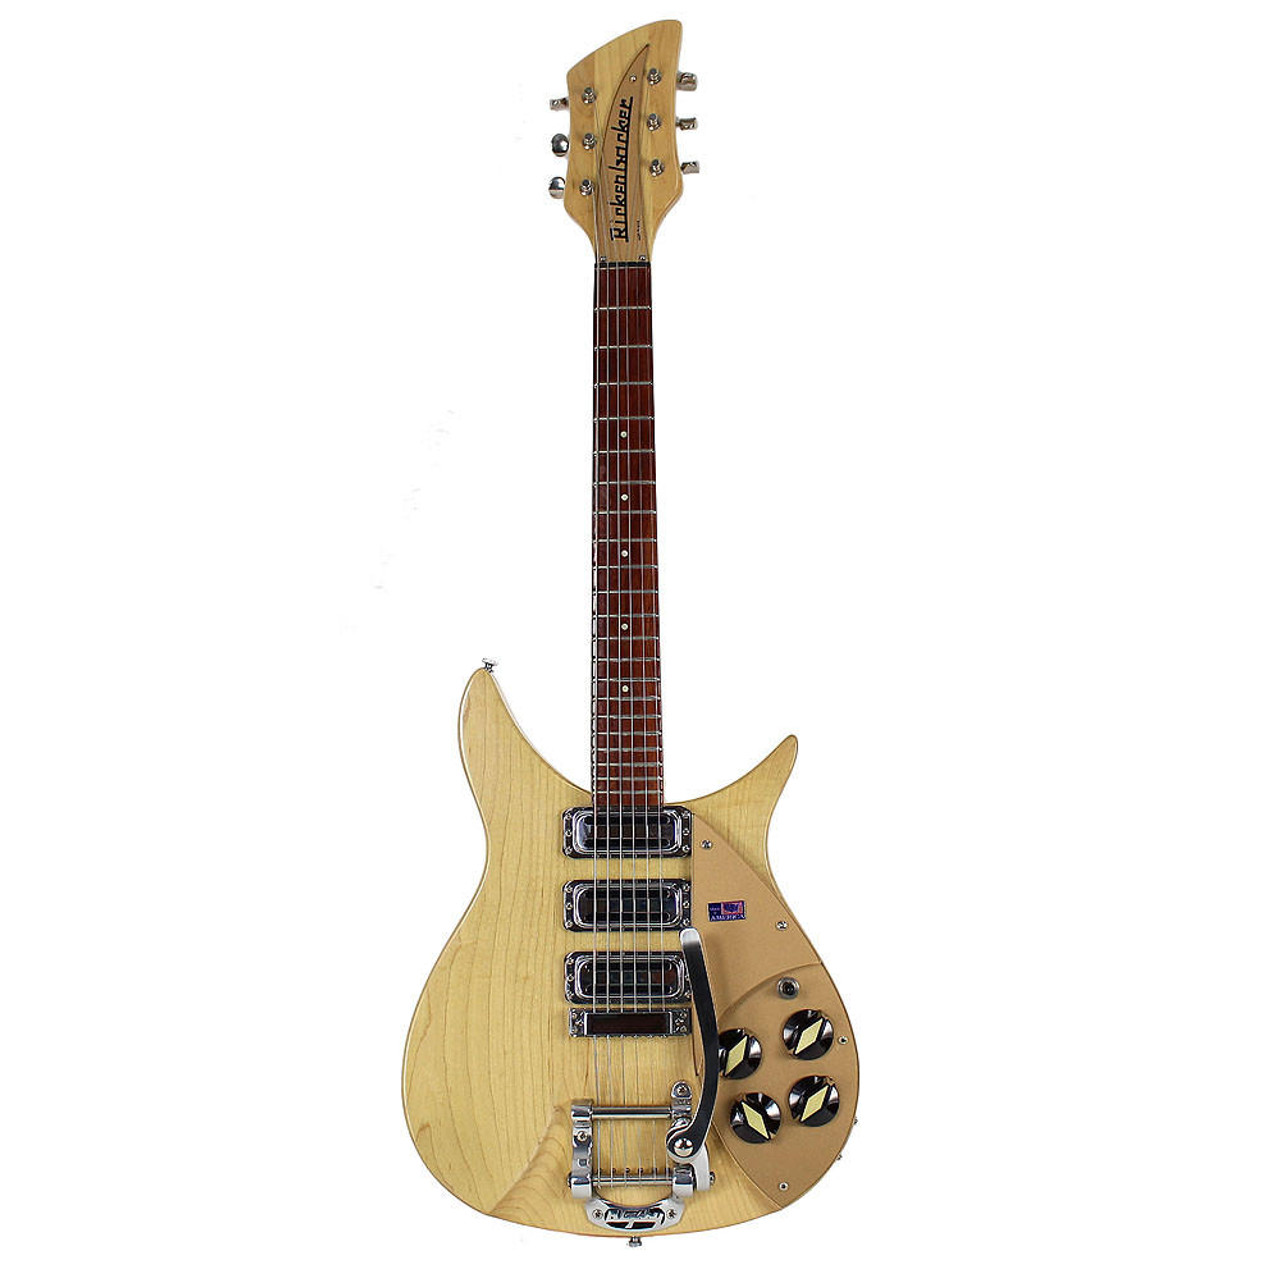 1993 Rickenbacker 325V59 John Lennon Model Electric Guitar Mapleglo